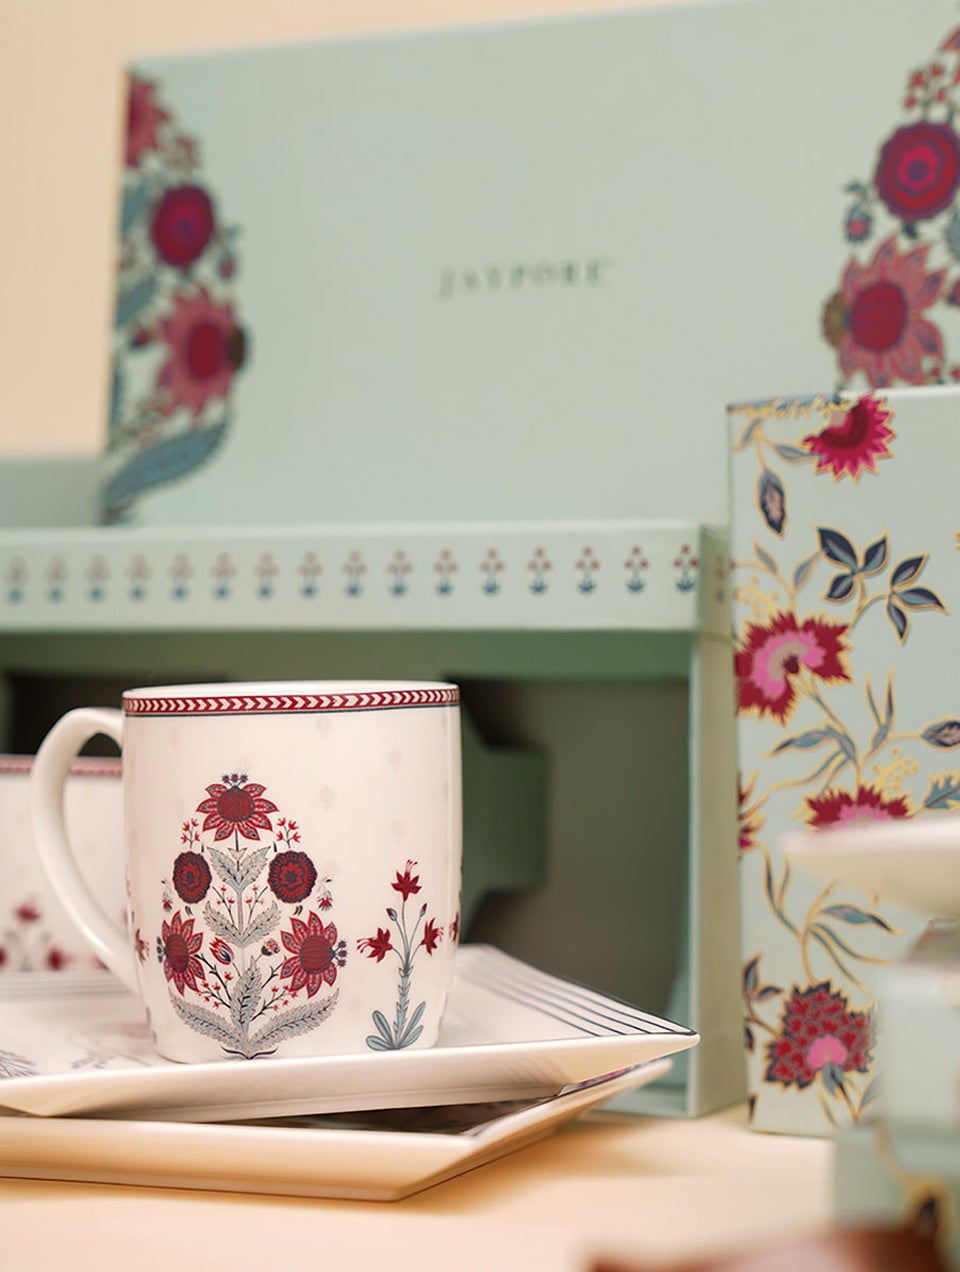 Mughal Inspired Porcelain Mug in A Gift Box